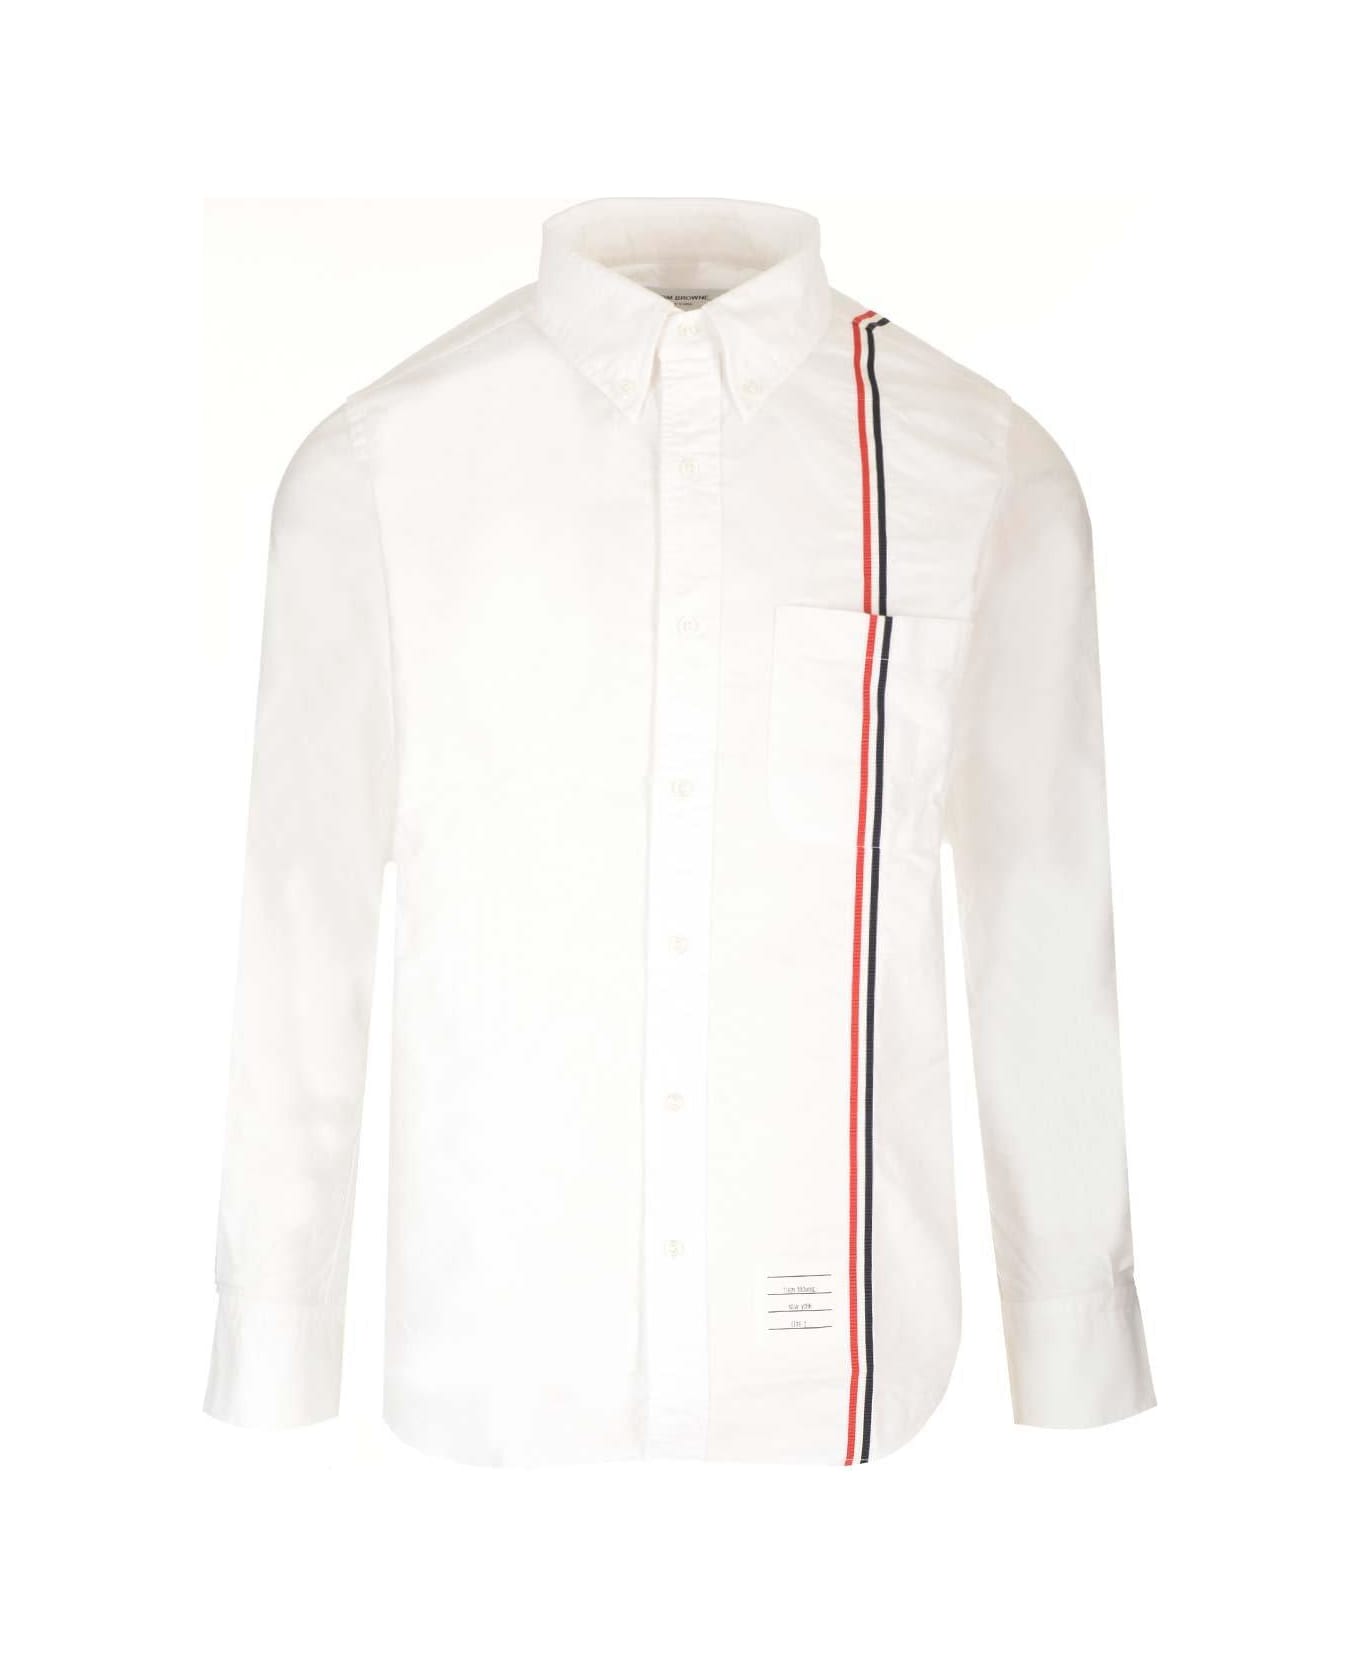 Thom Browne Rwb Striped Buttoned Shirt - White シャツ